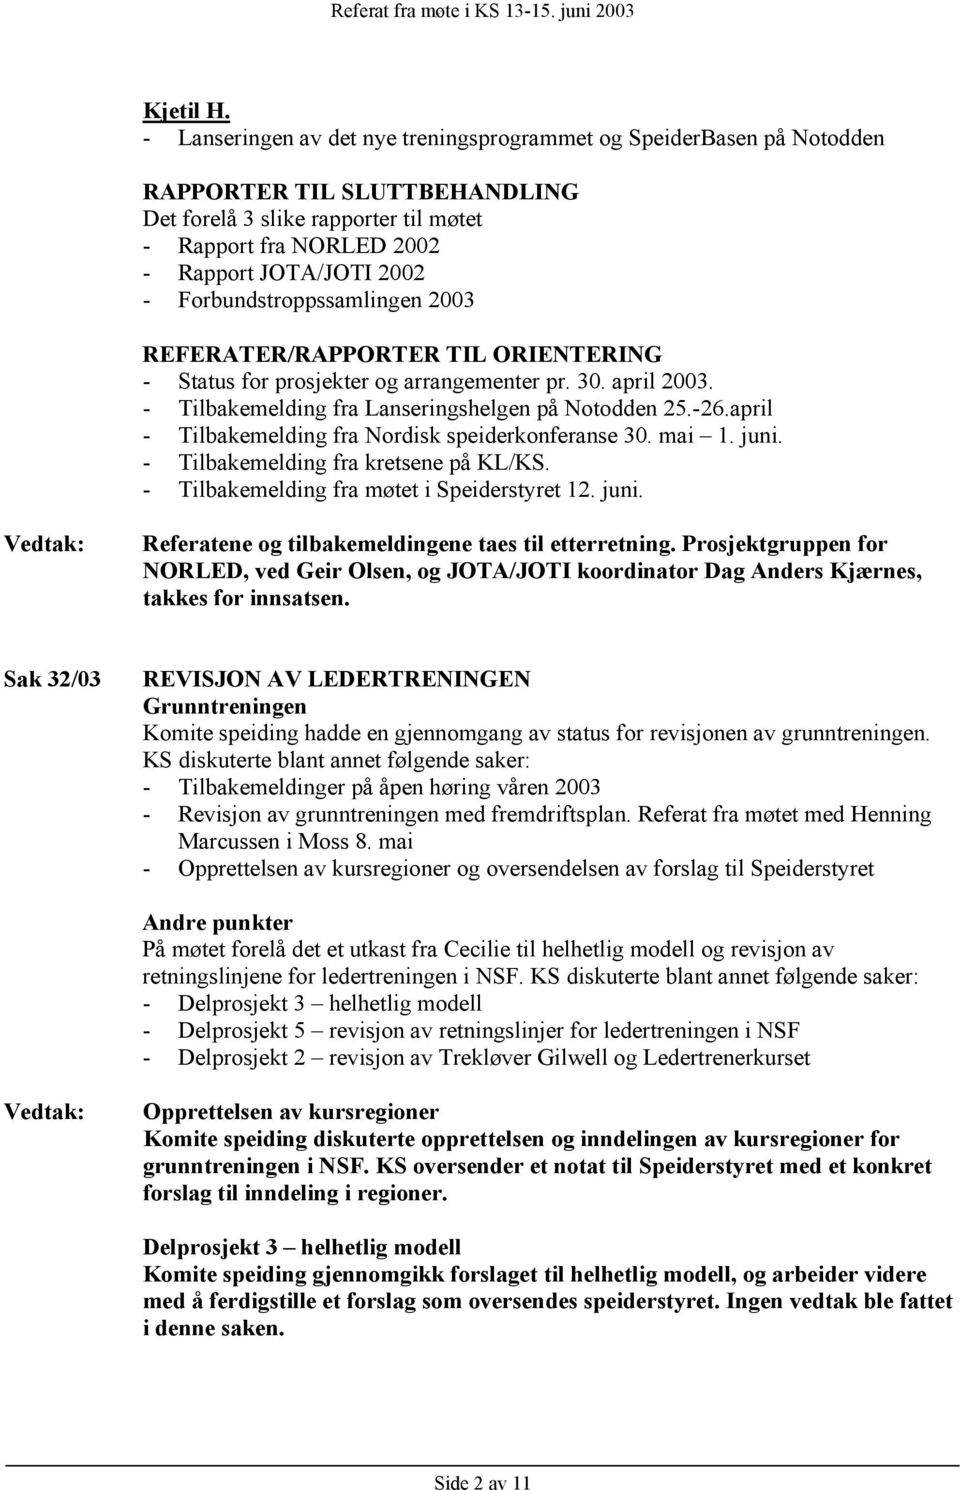 prosjekter og arrangementer pr. 30. april 2003. - Tilbakemelding fra Lanseringshelgen på Notodden 25.-26.april - Tilbakemelding fra Nordisk speiderkonferanse 30. mai 1. juni.